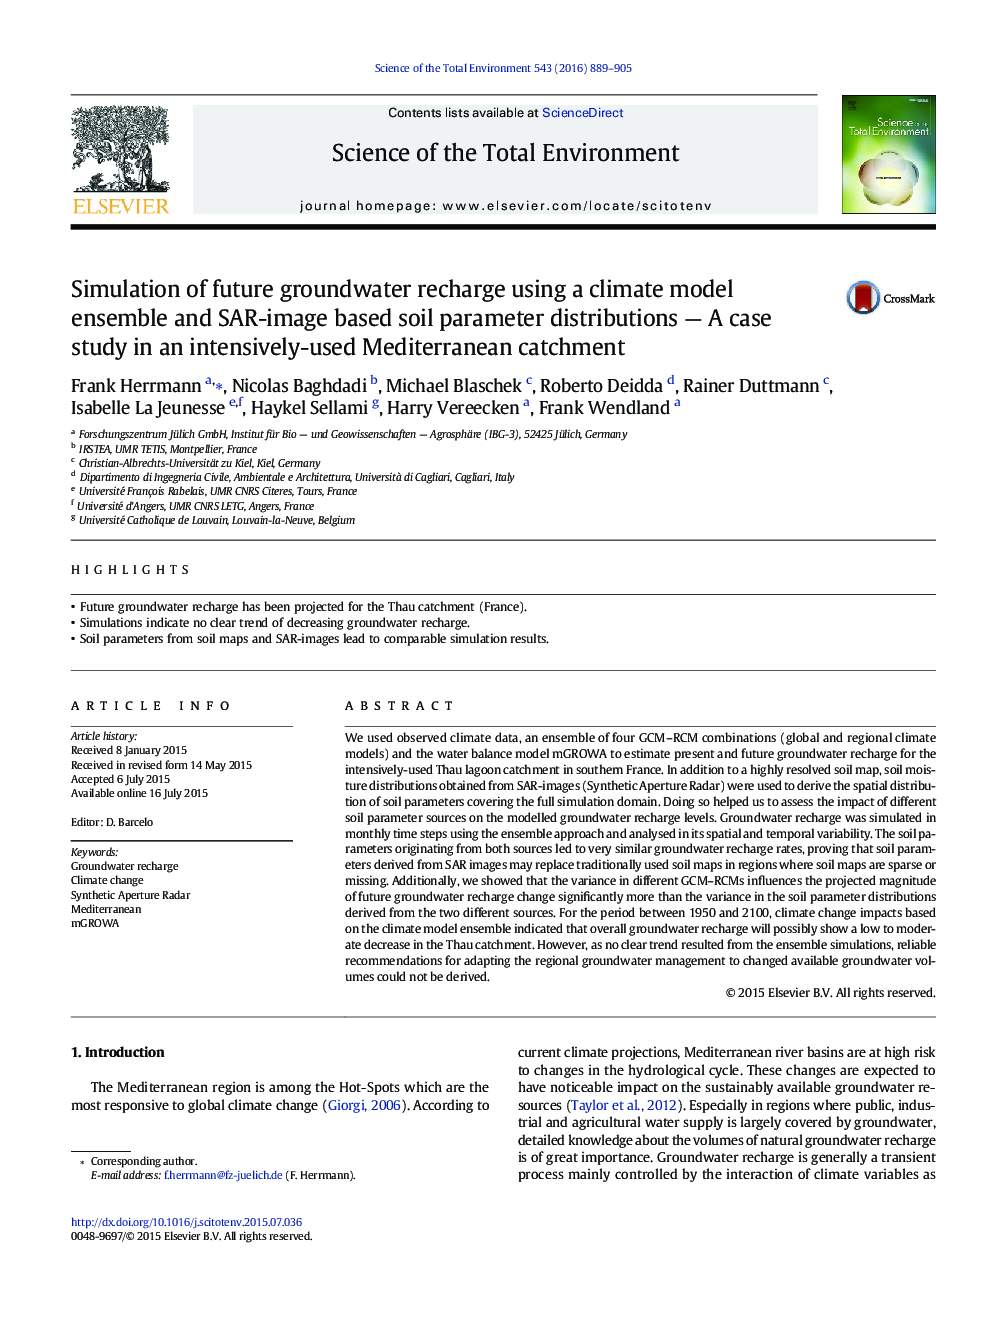 شبیه سازی تغذیه آب های زیرزمینی آینده با استفاده از یک گروه مدل آب و هوا و توزیع های پارامتر خاک مبتنی بر تصویر SAR ؛ مطالعه موردی در حوضه آبریز دریای مدیترانه به شدت مورد استفاده شده